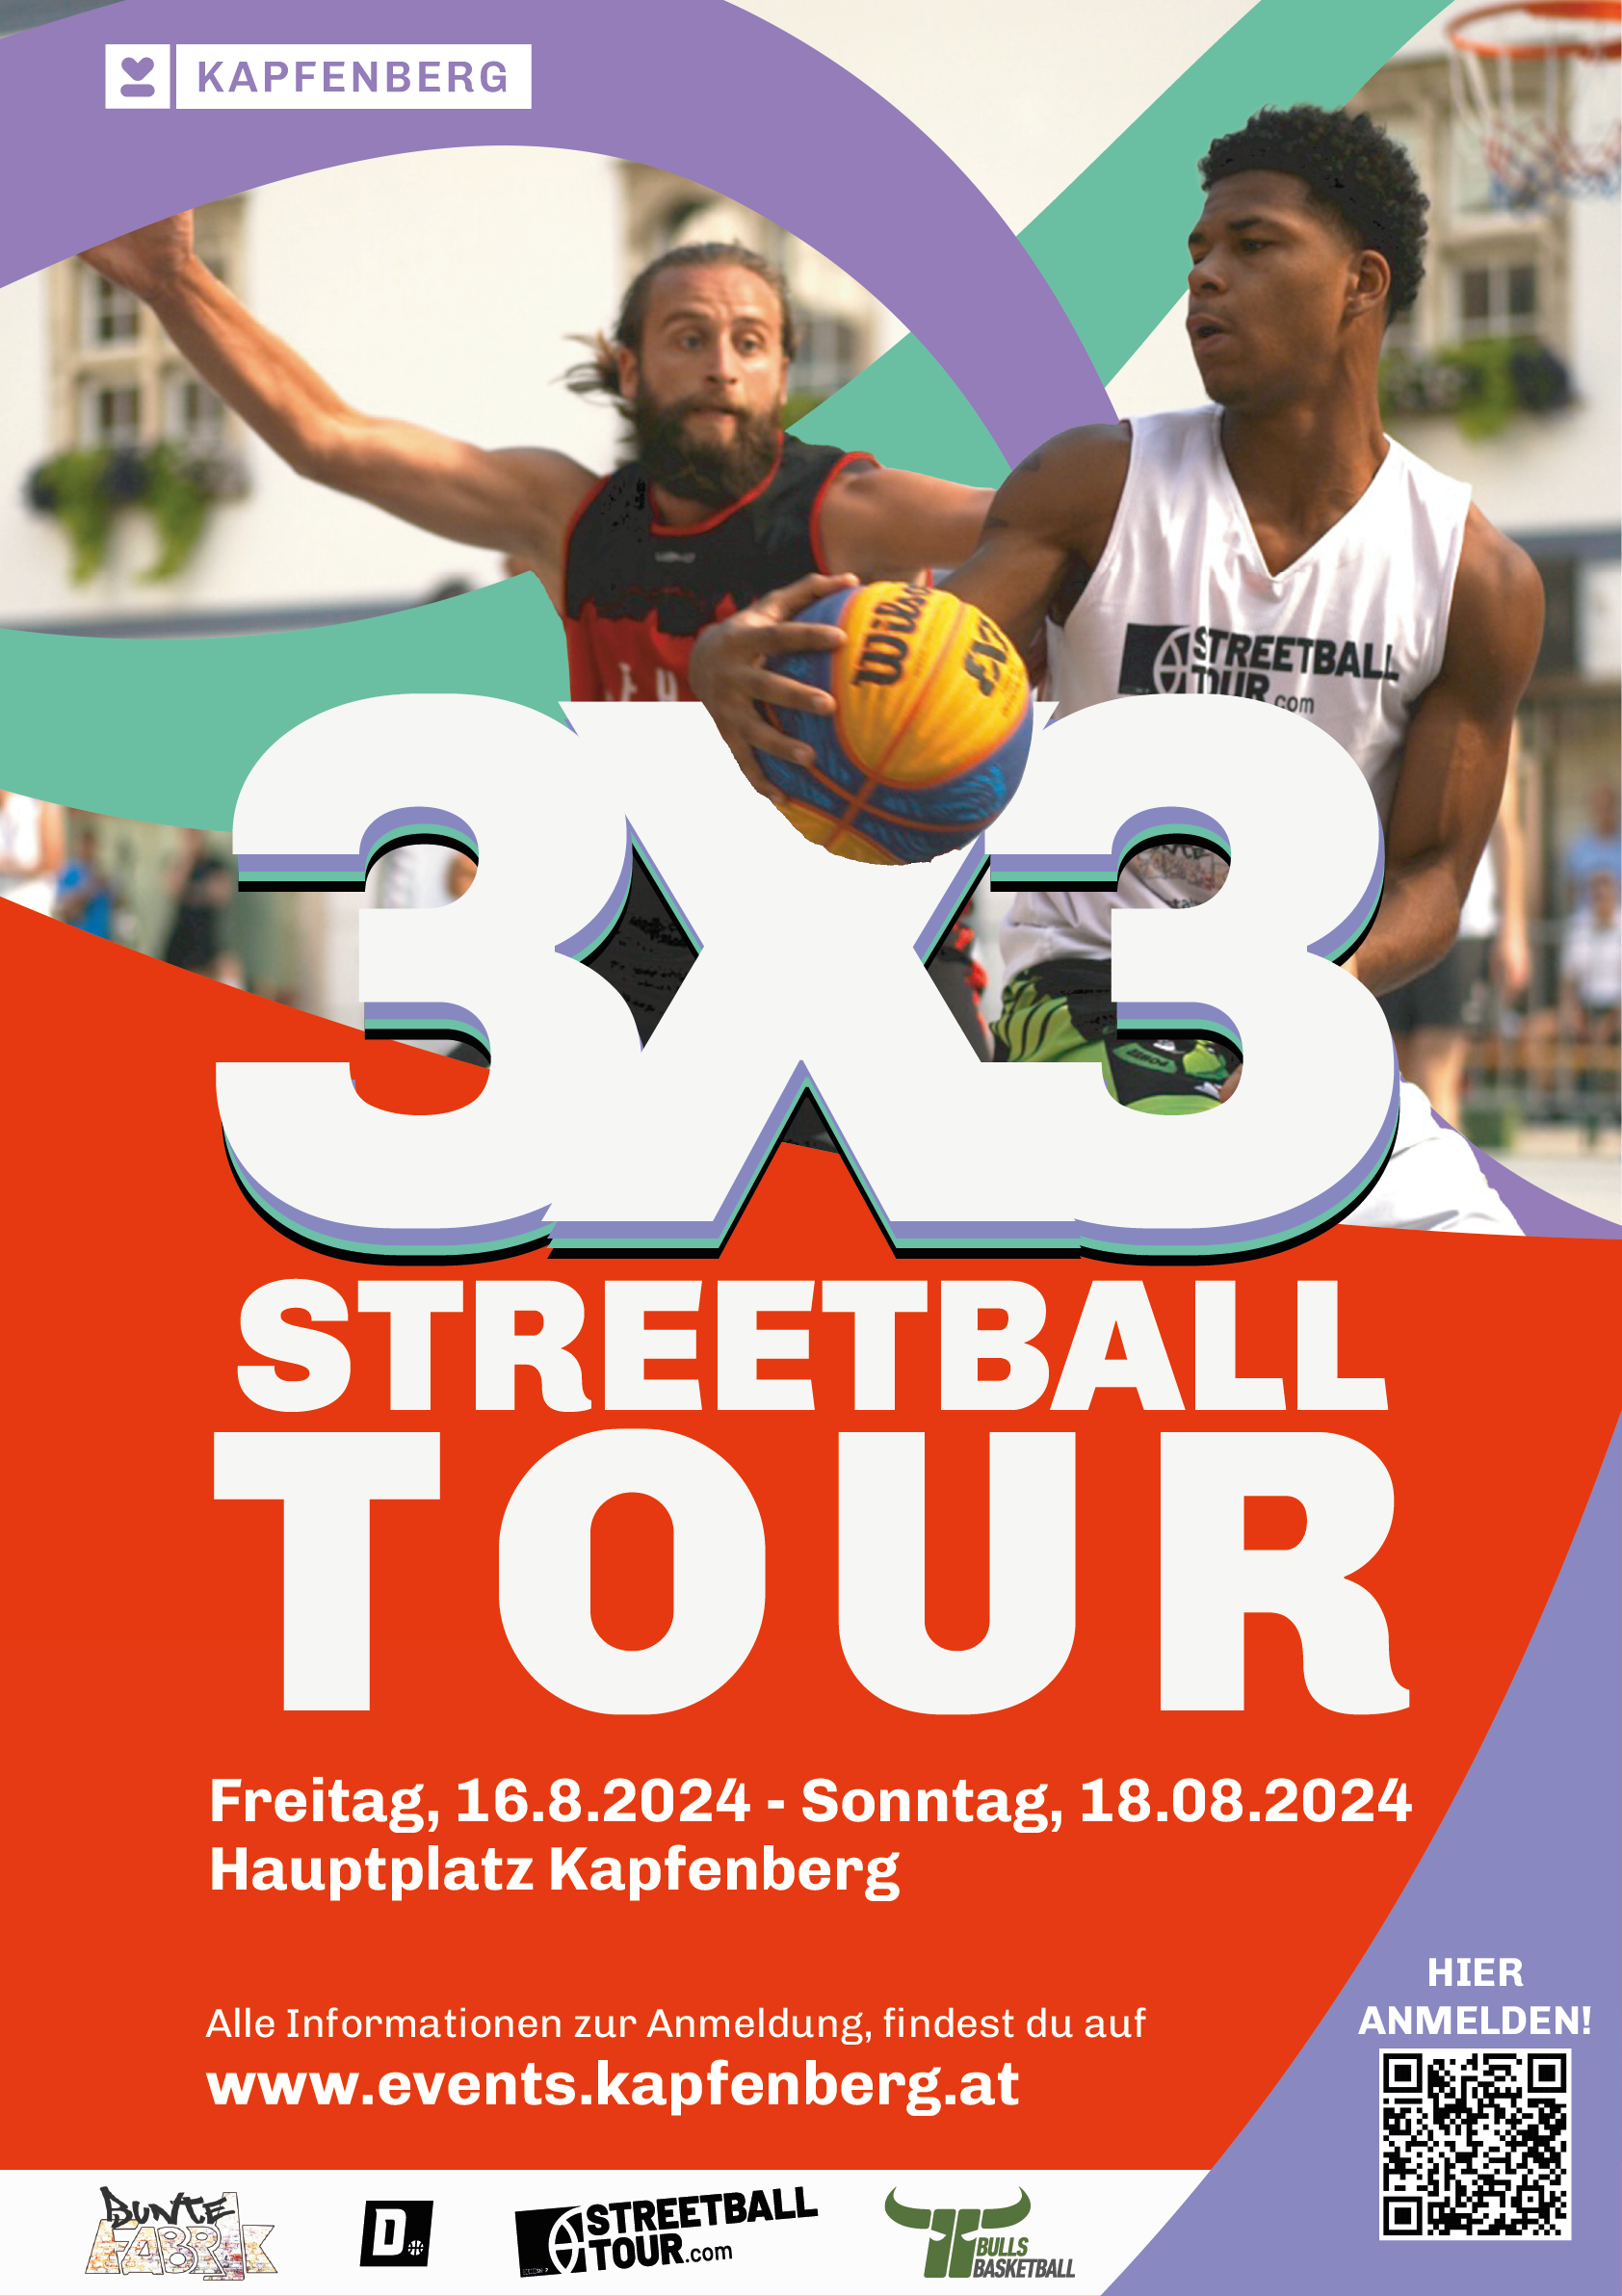 Dunkshop 3×3 Streetballtour